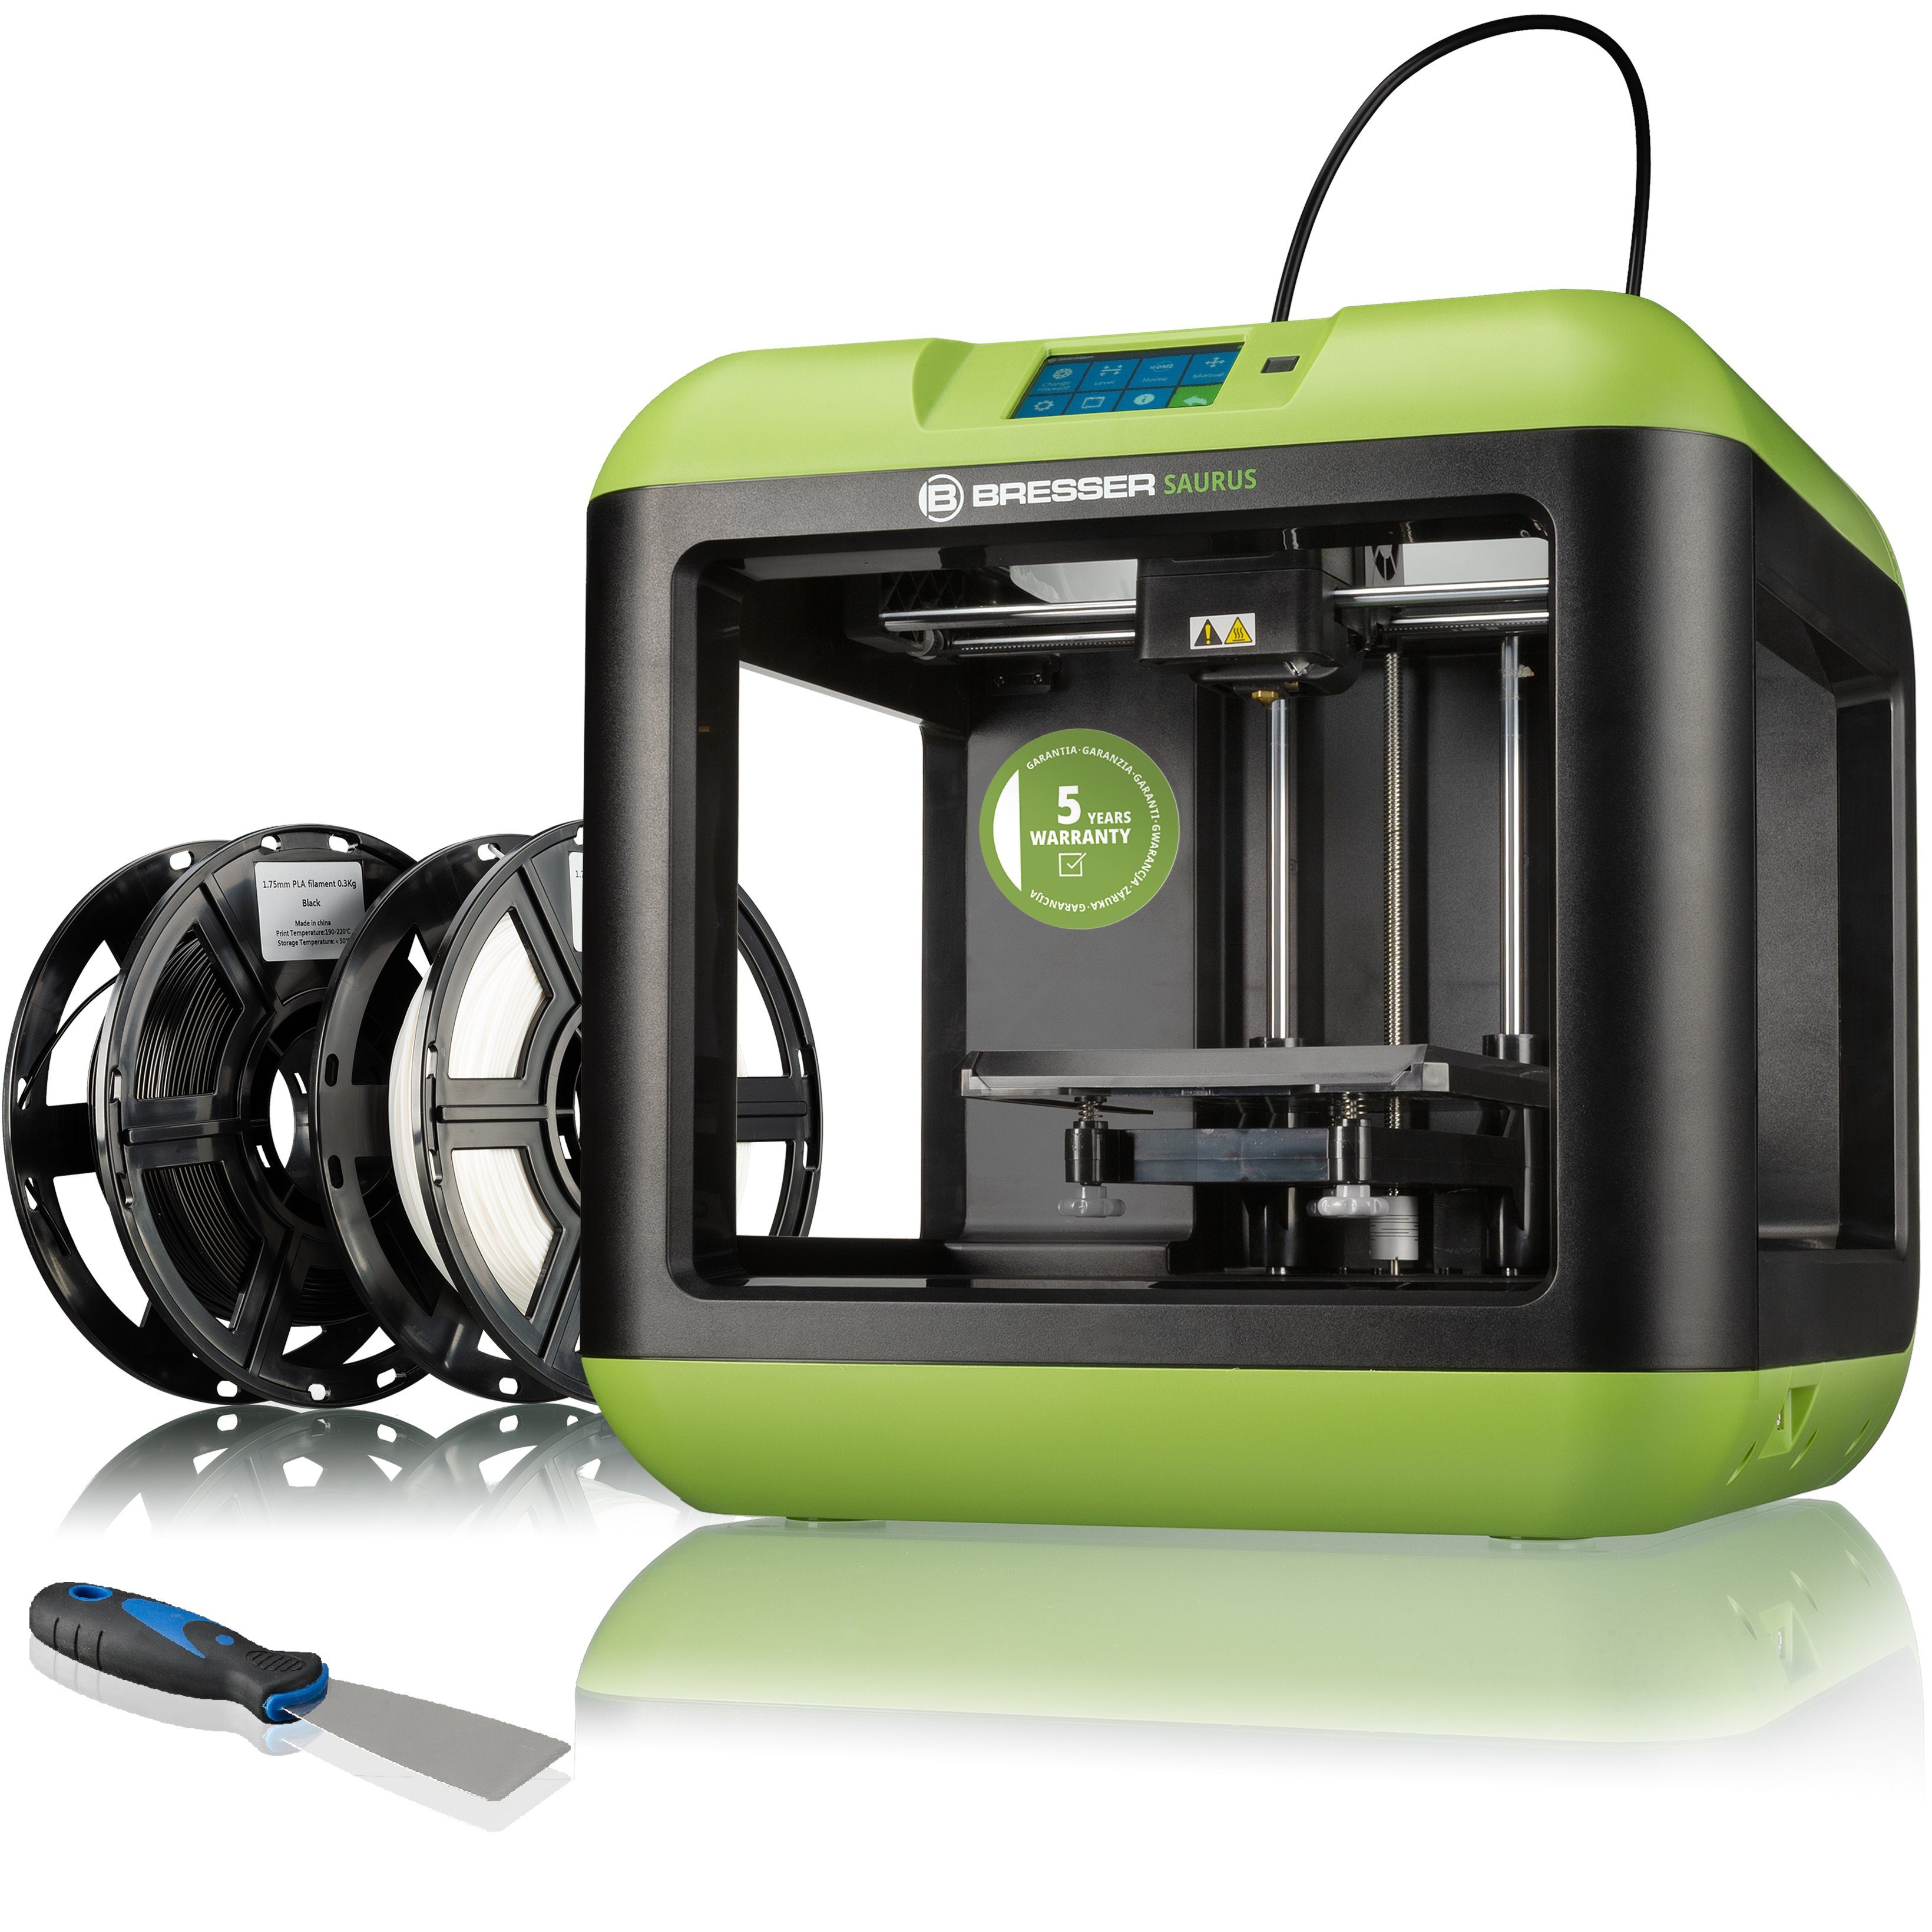 BRESSER 3D-Drucker SAURUS Einsteiger WLAN 3D Drucker mit Filament-Bun